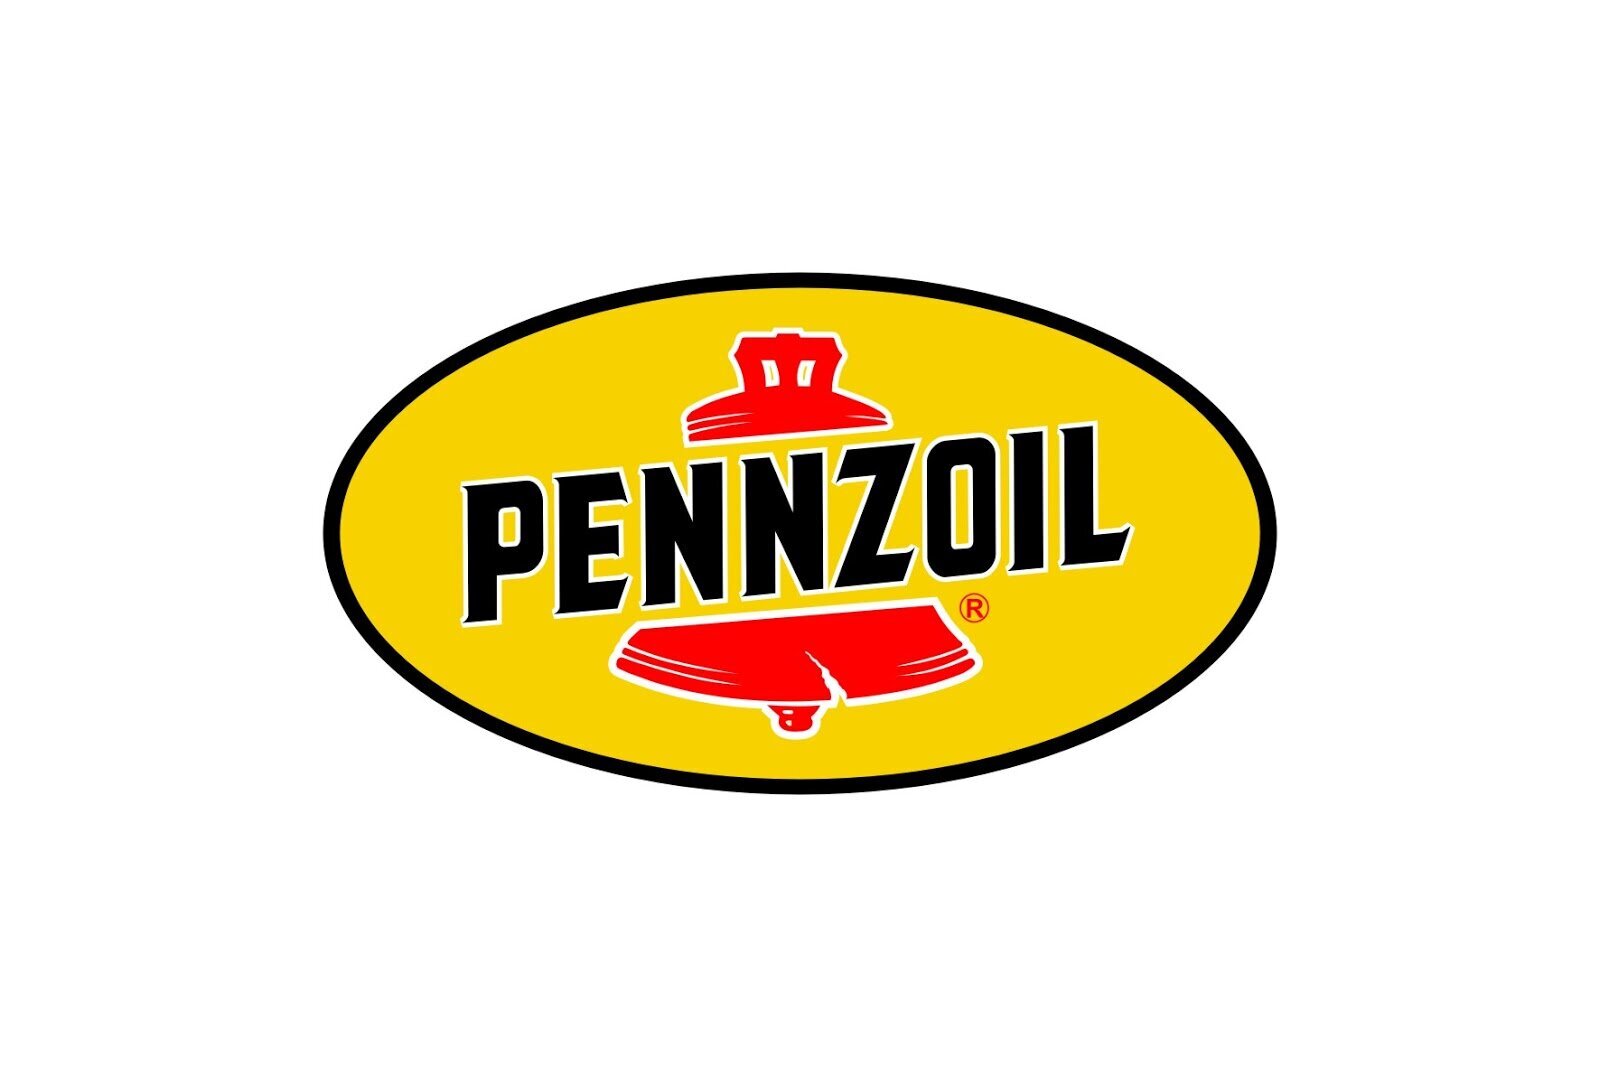 Pennzoil logo